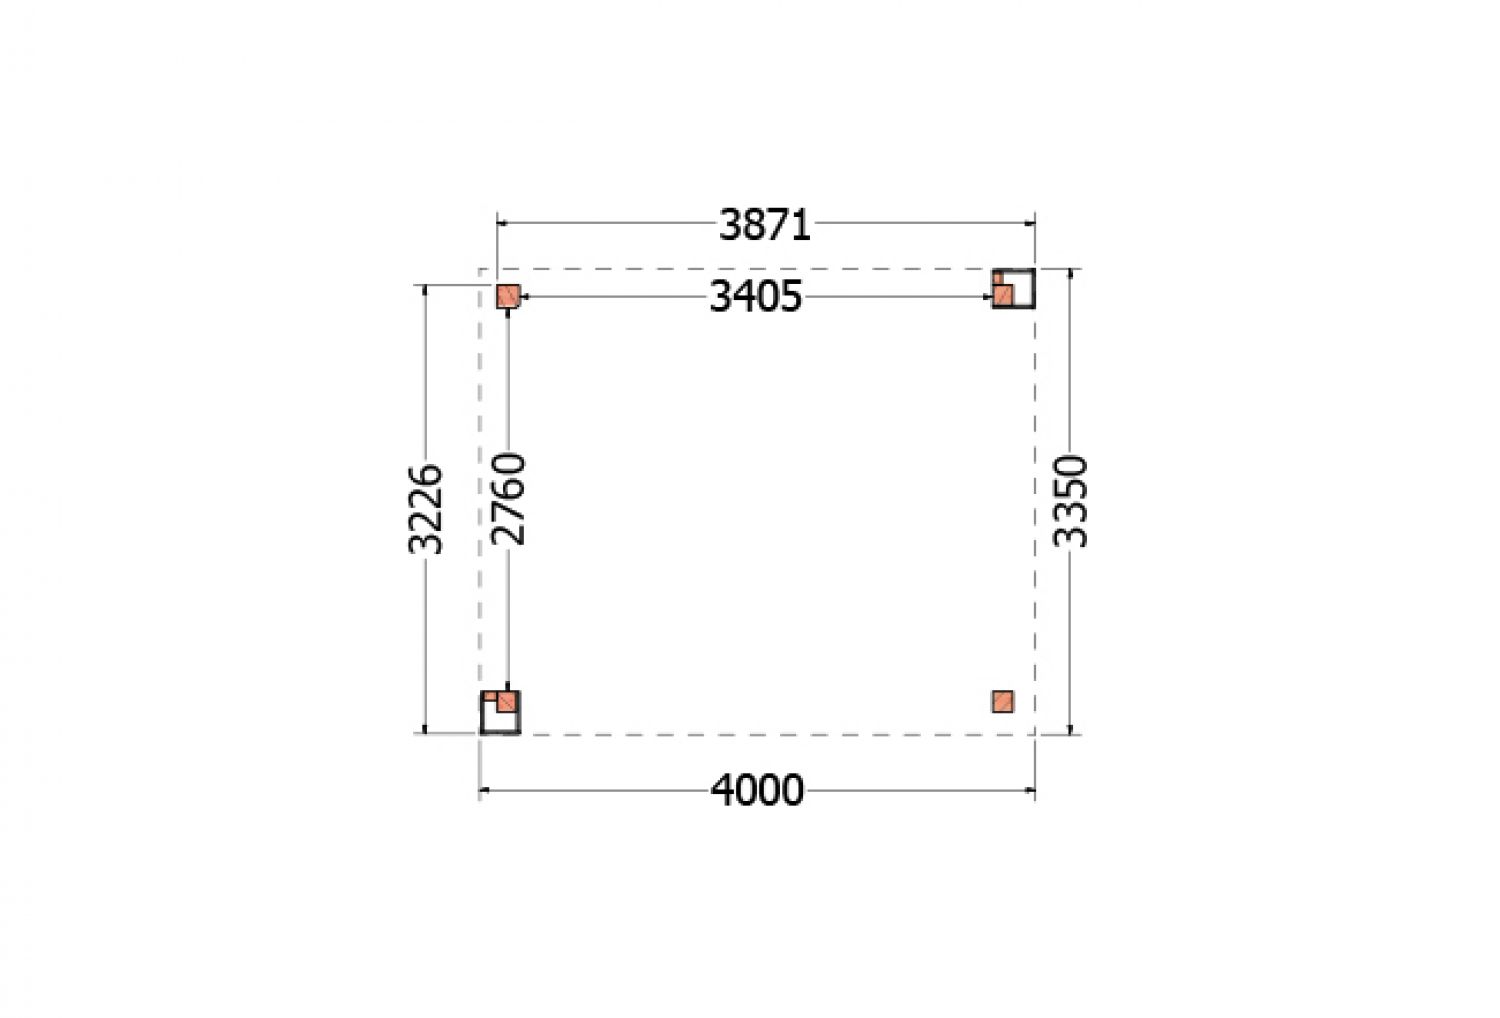 Buitenverblijf Verona 400x335 cm - Plat dak model links - plattegrond